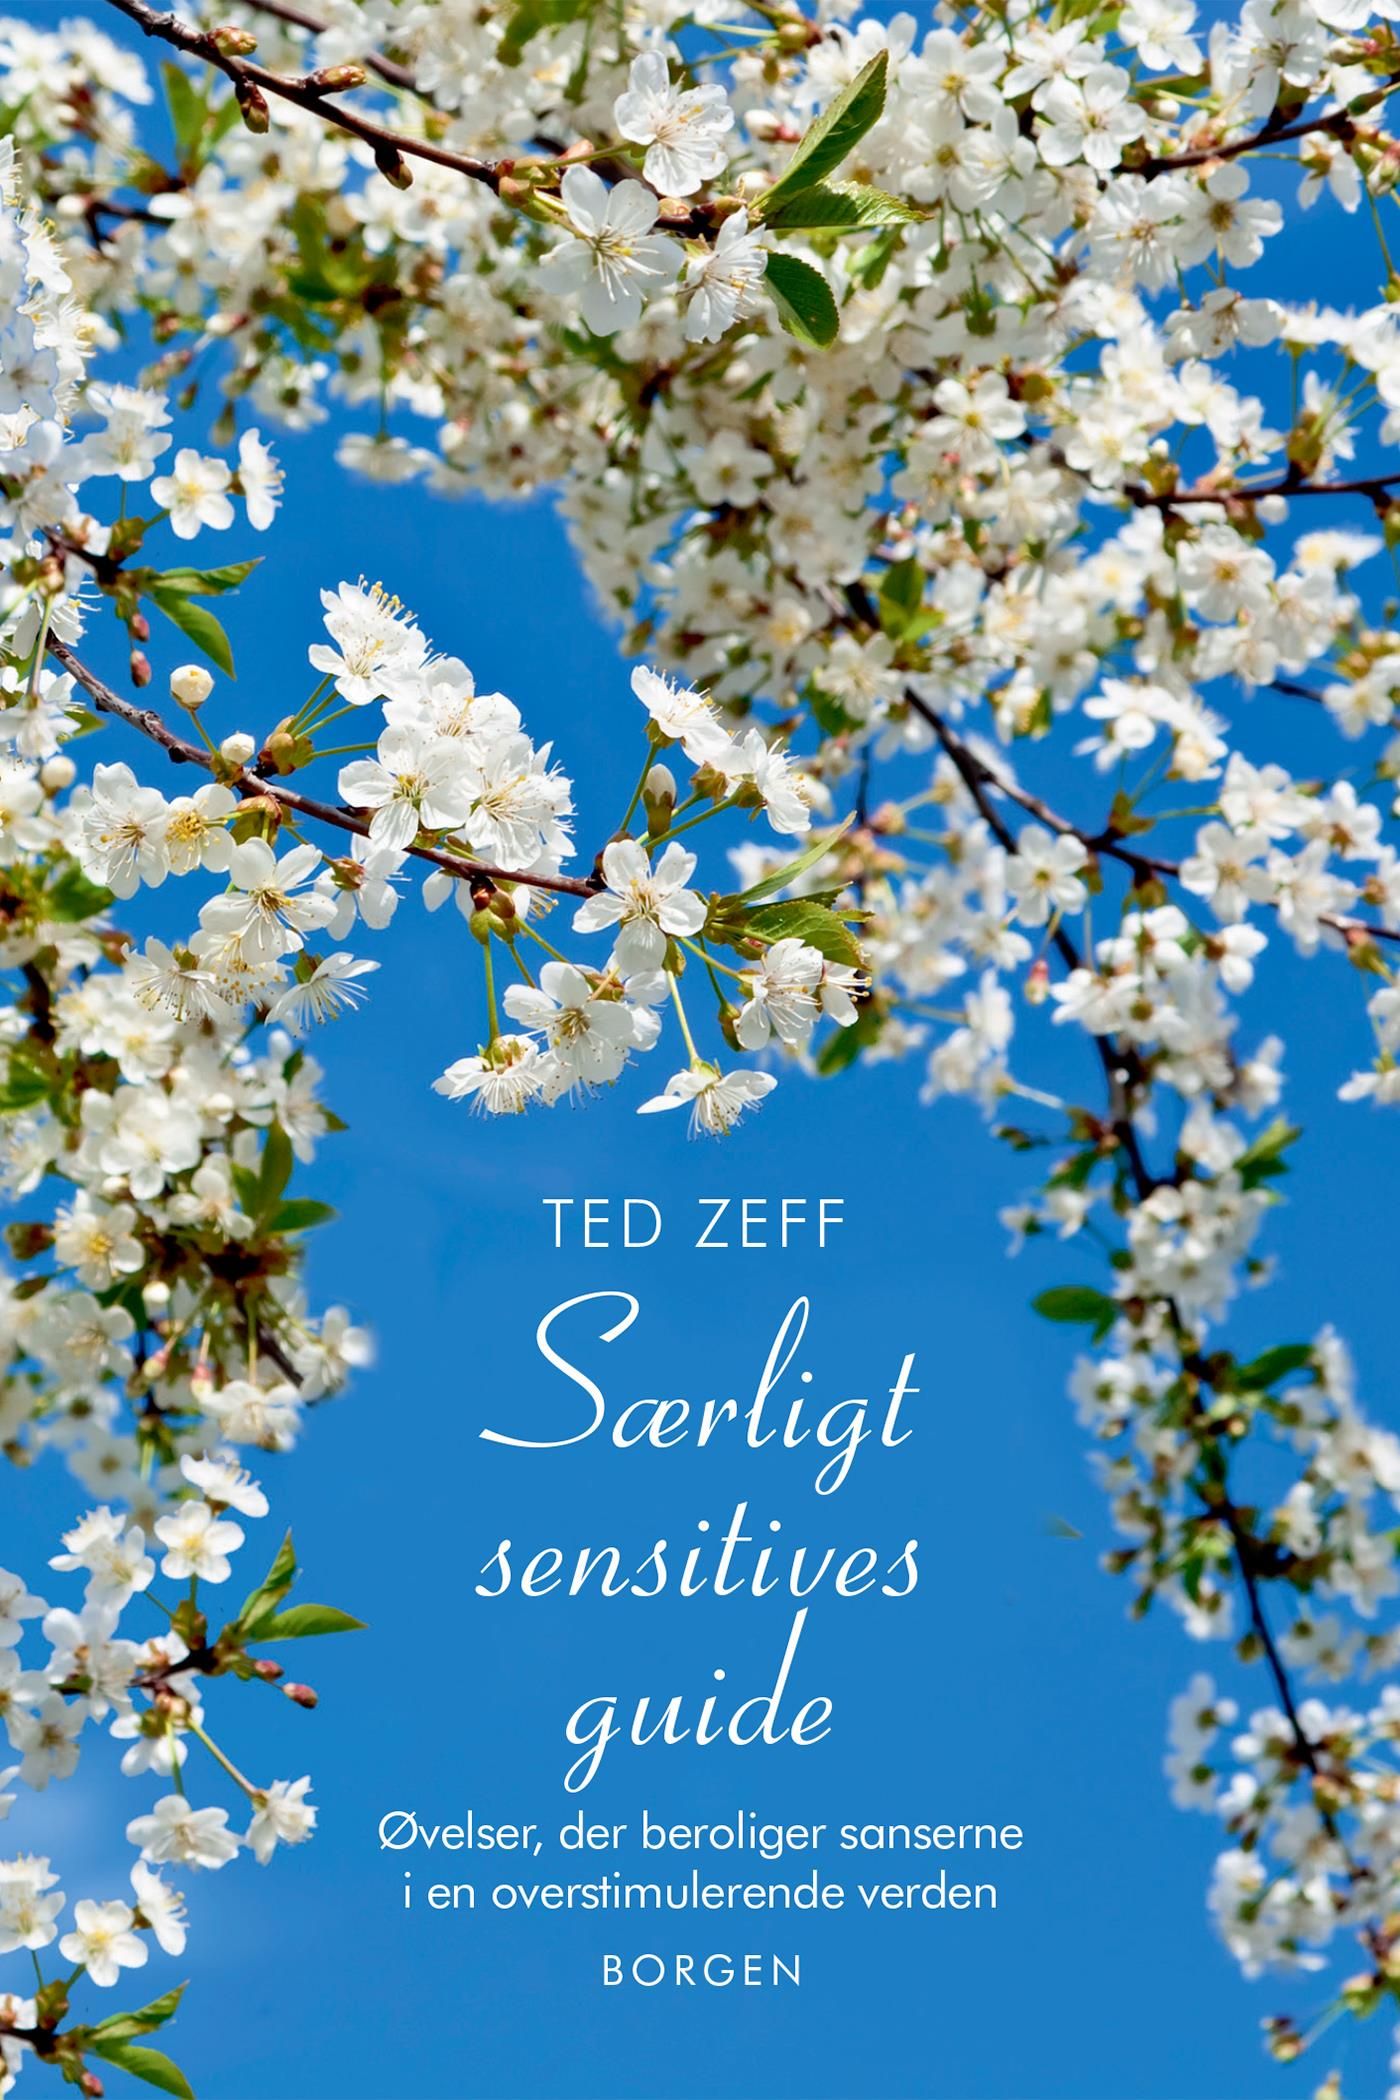 Særligt sensitives guide, e-bog af Ted Zeff